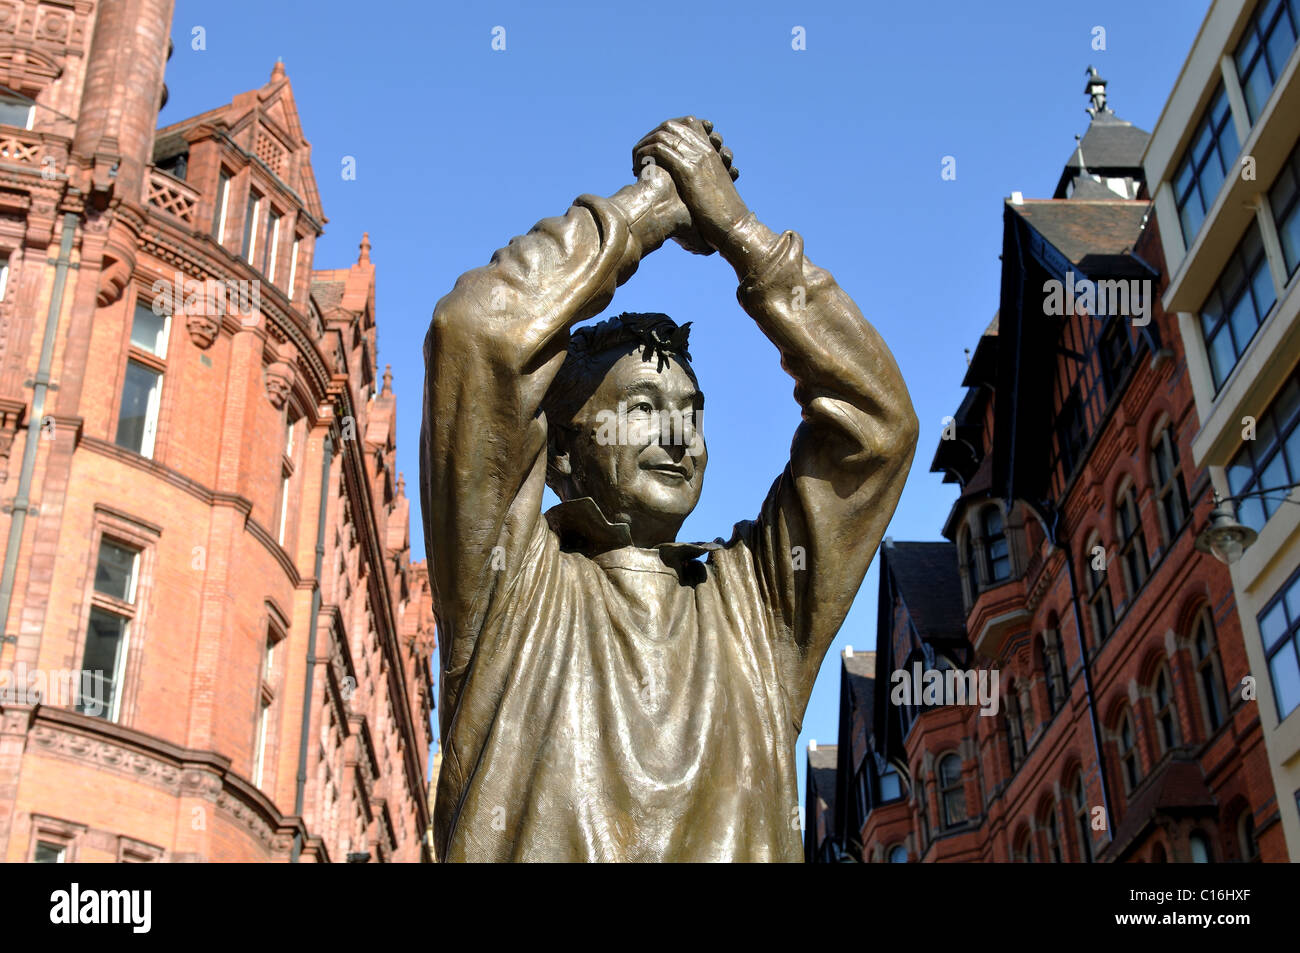 Brian Clough statue, Nottingham city centre, England, UK Stock Photo